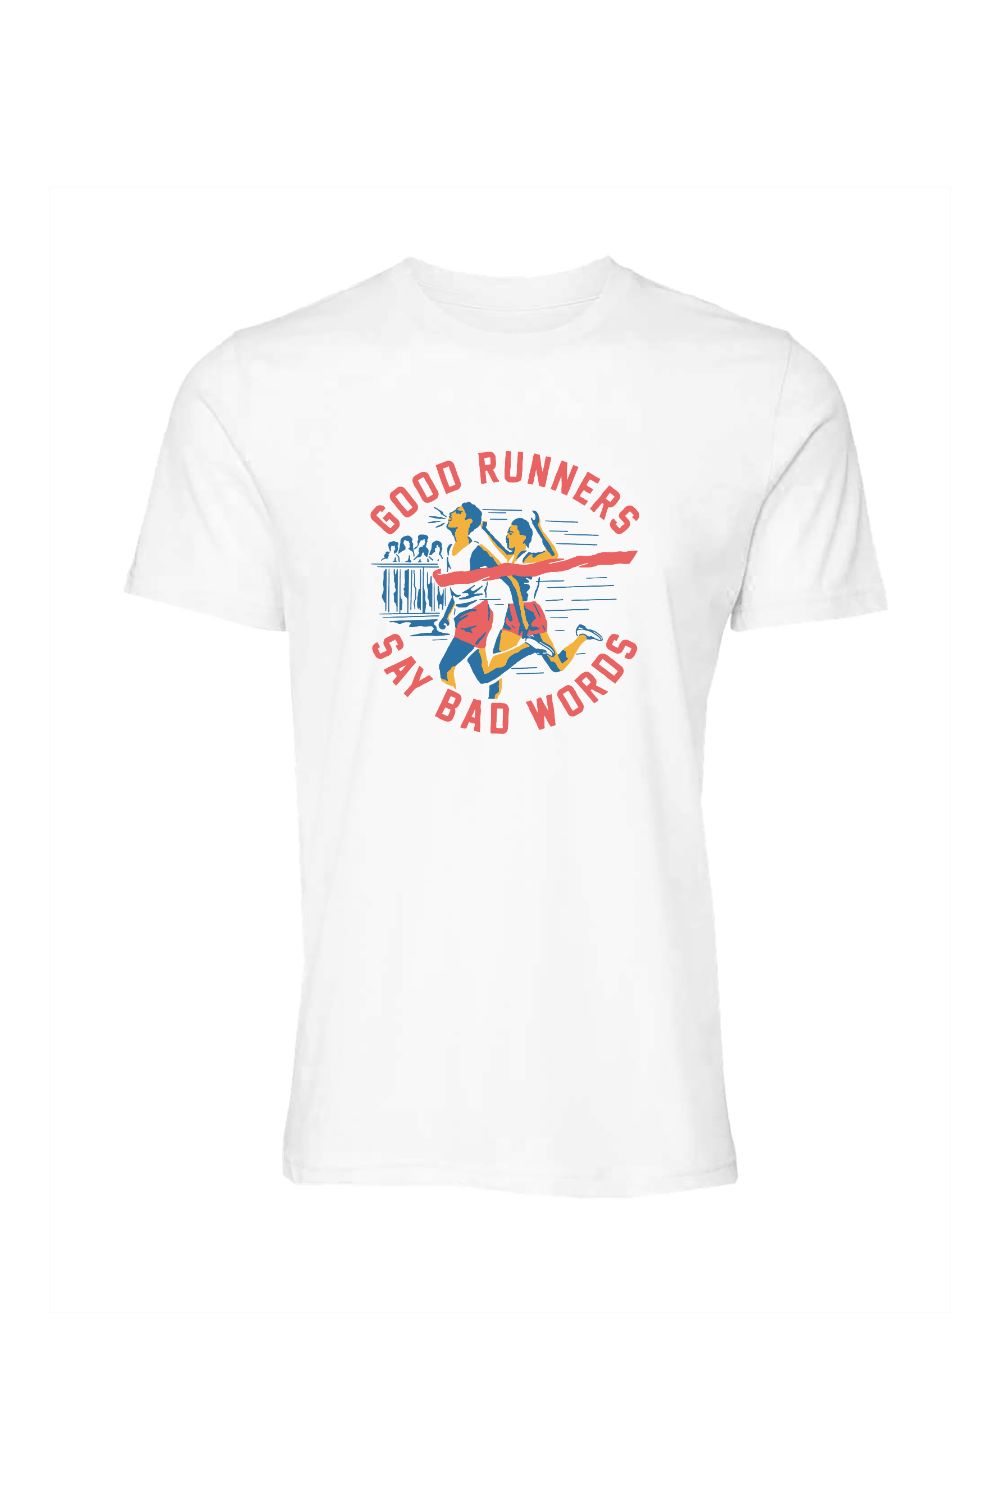 Good Runners T-Shirt